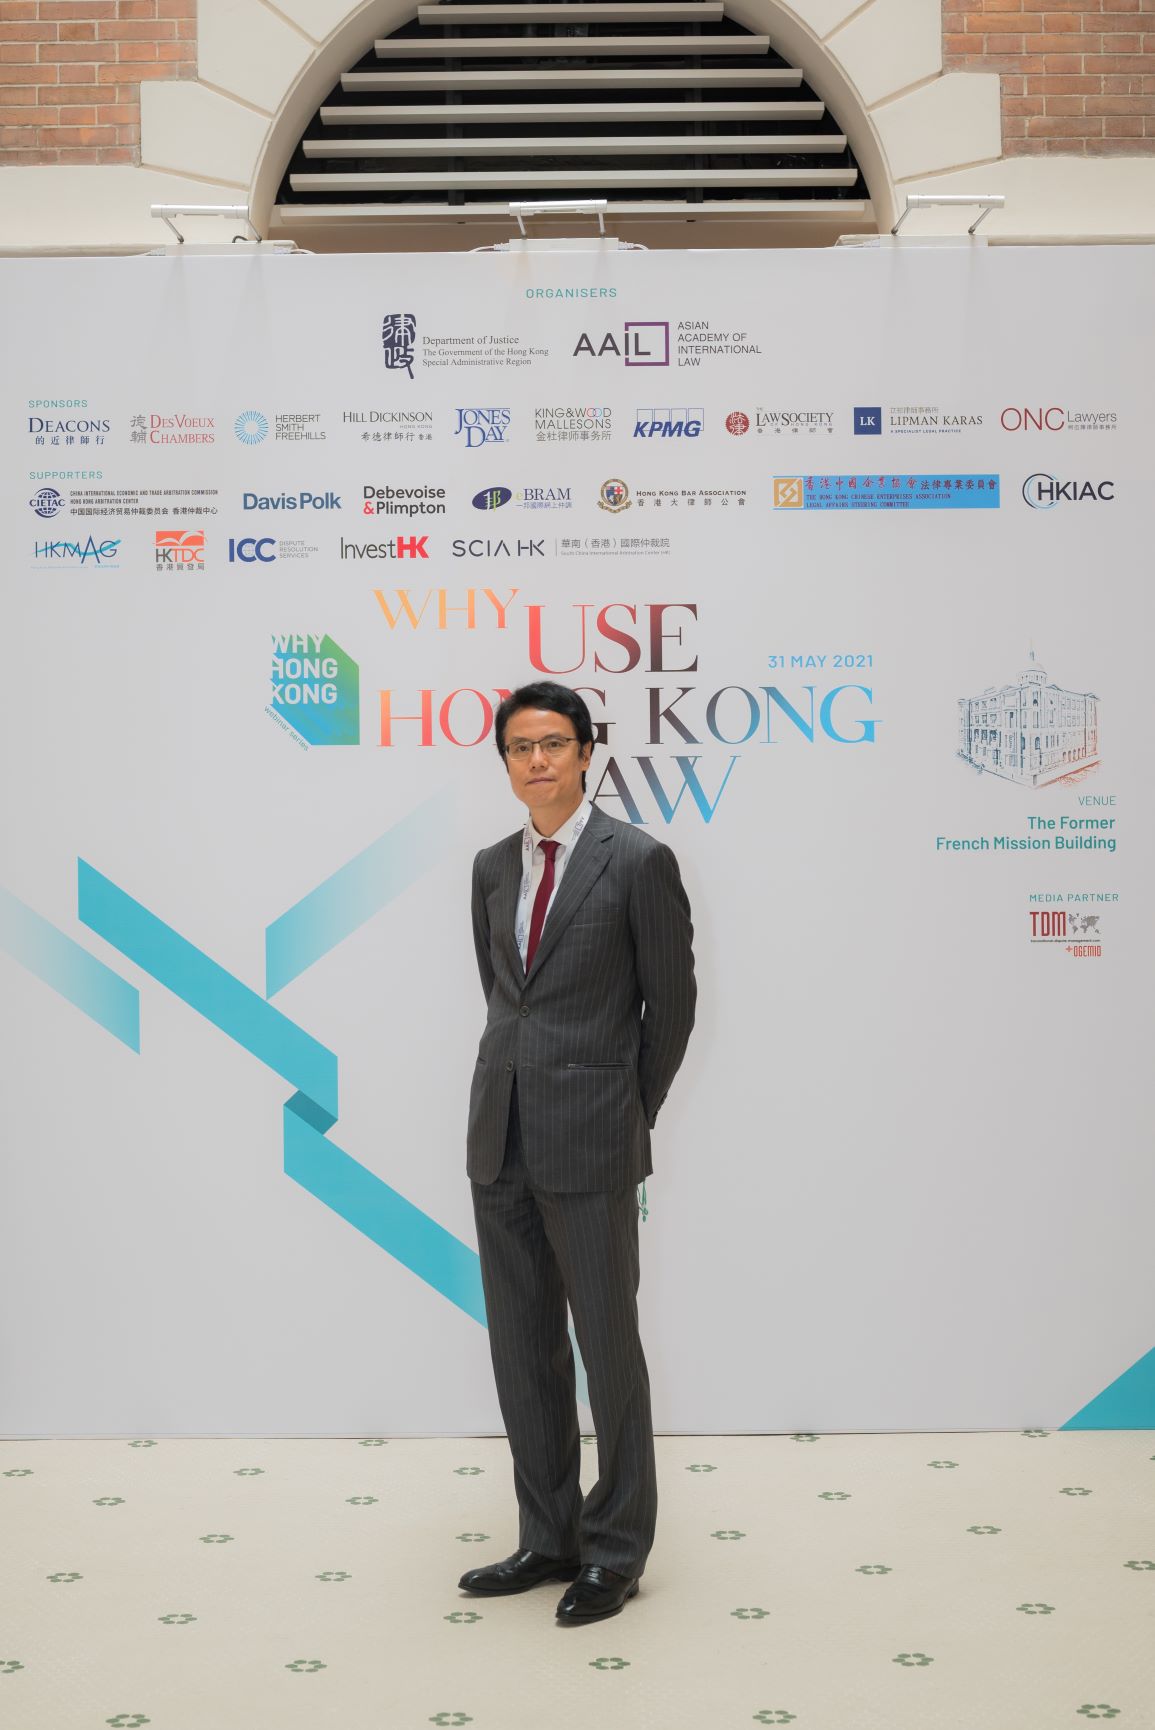 伍兆榮律師為亞洲國際法律研究院主辦的「為何選用香港法律」網上研討會擔任小組討論主持